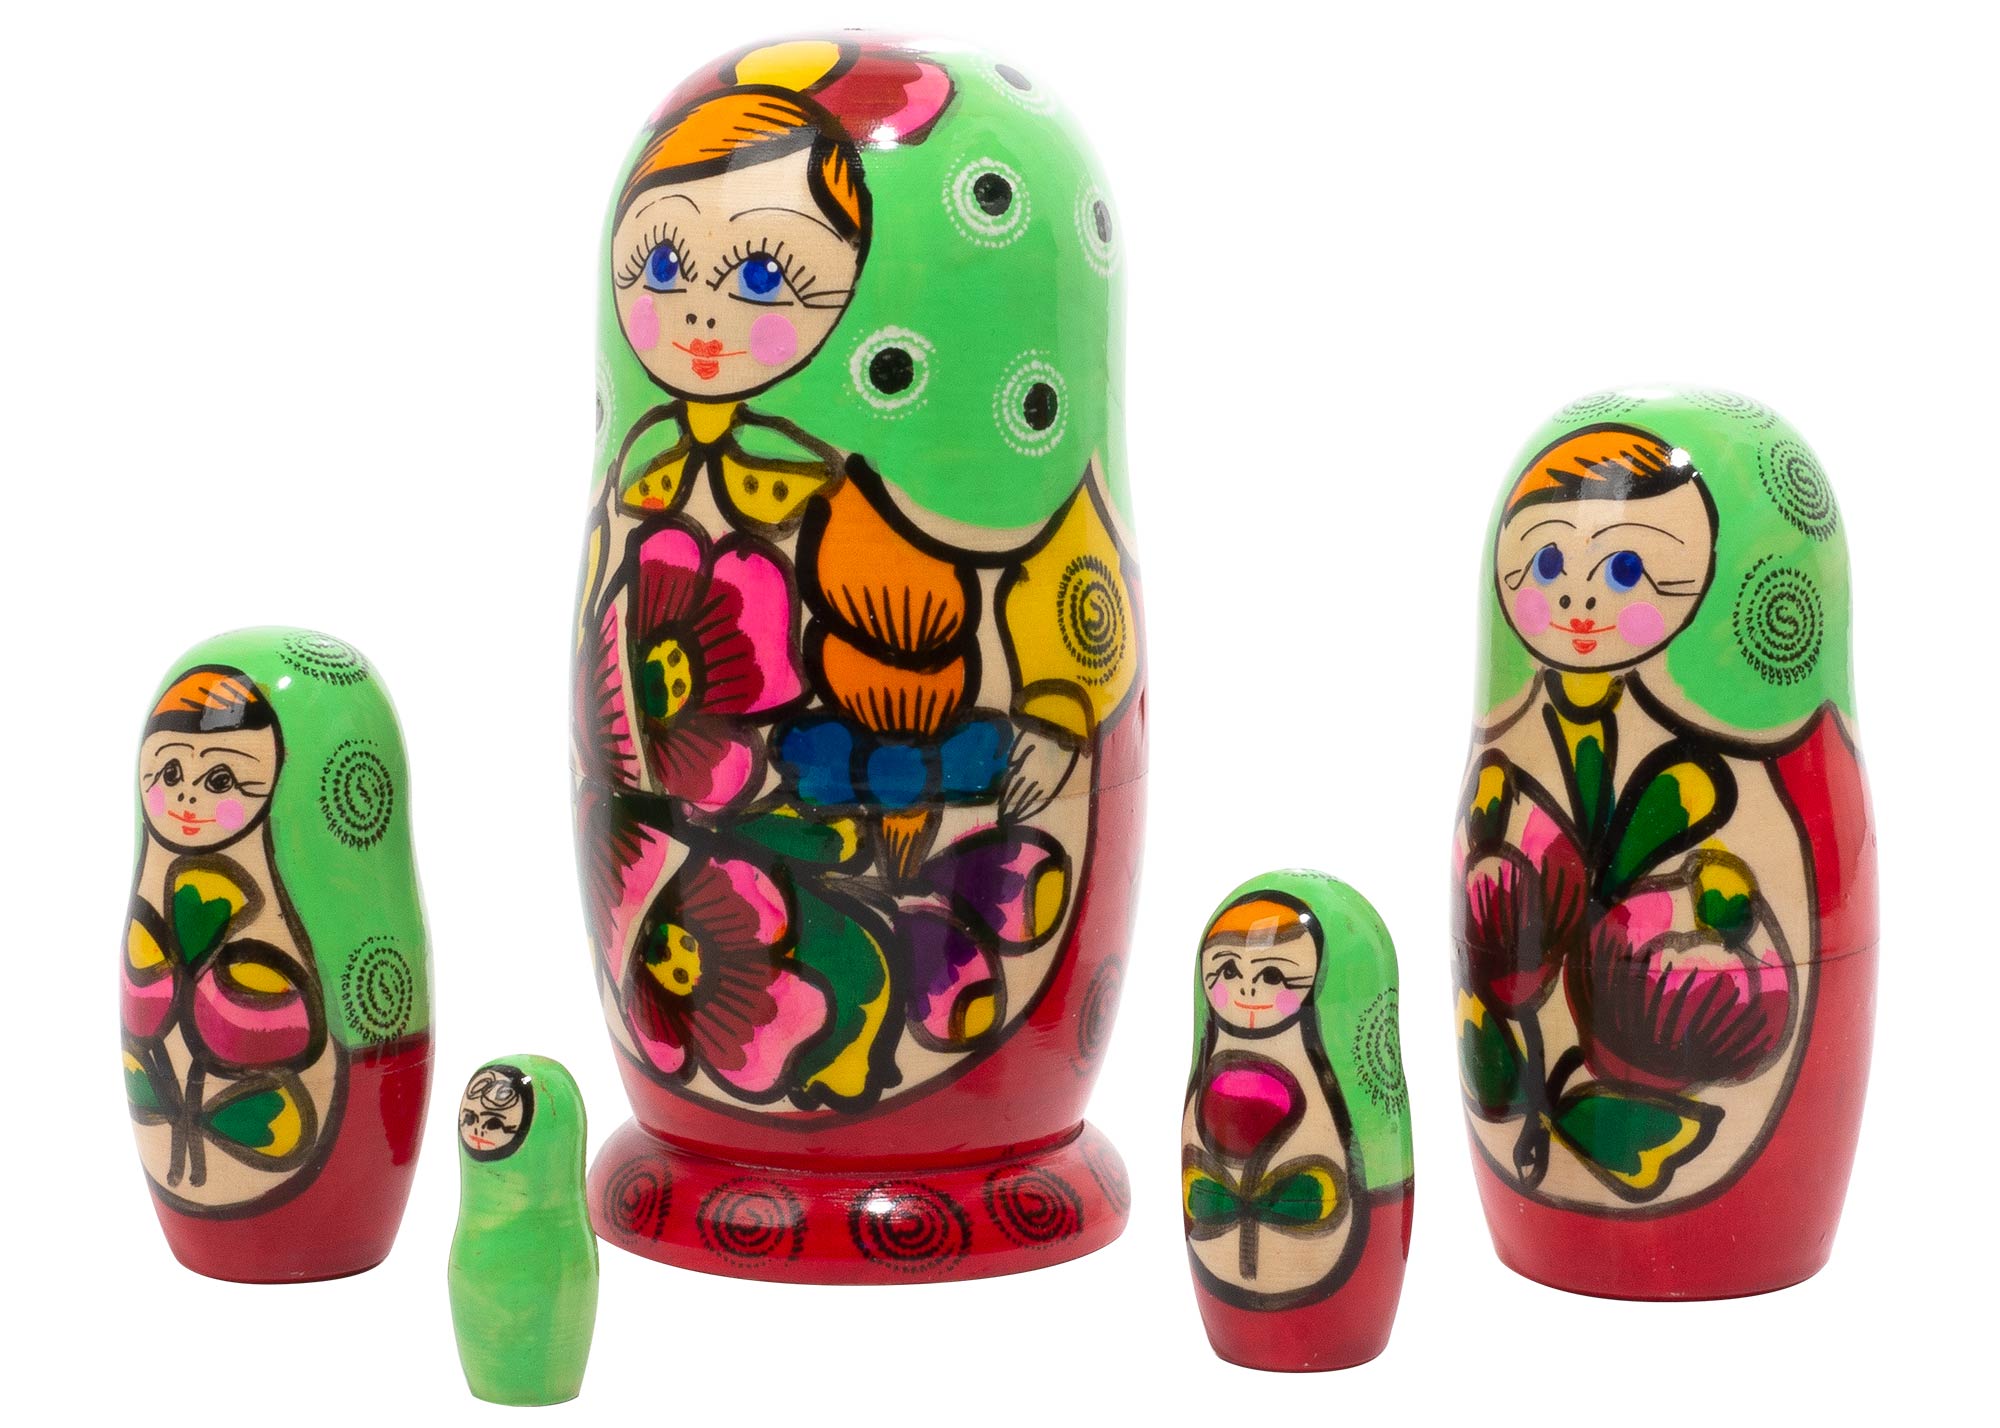 Buy Polkhovski Maidan Matryoshka Doll 5pc./5.5" at GoldenCockerel.com